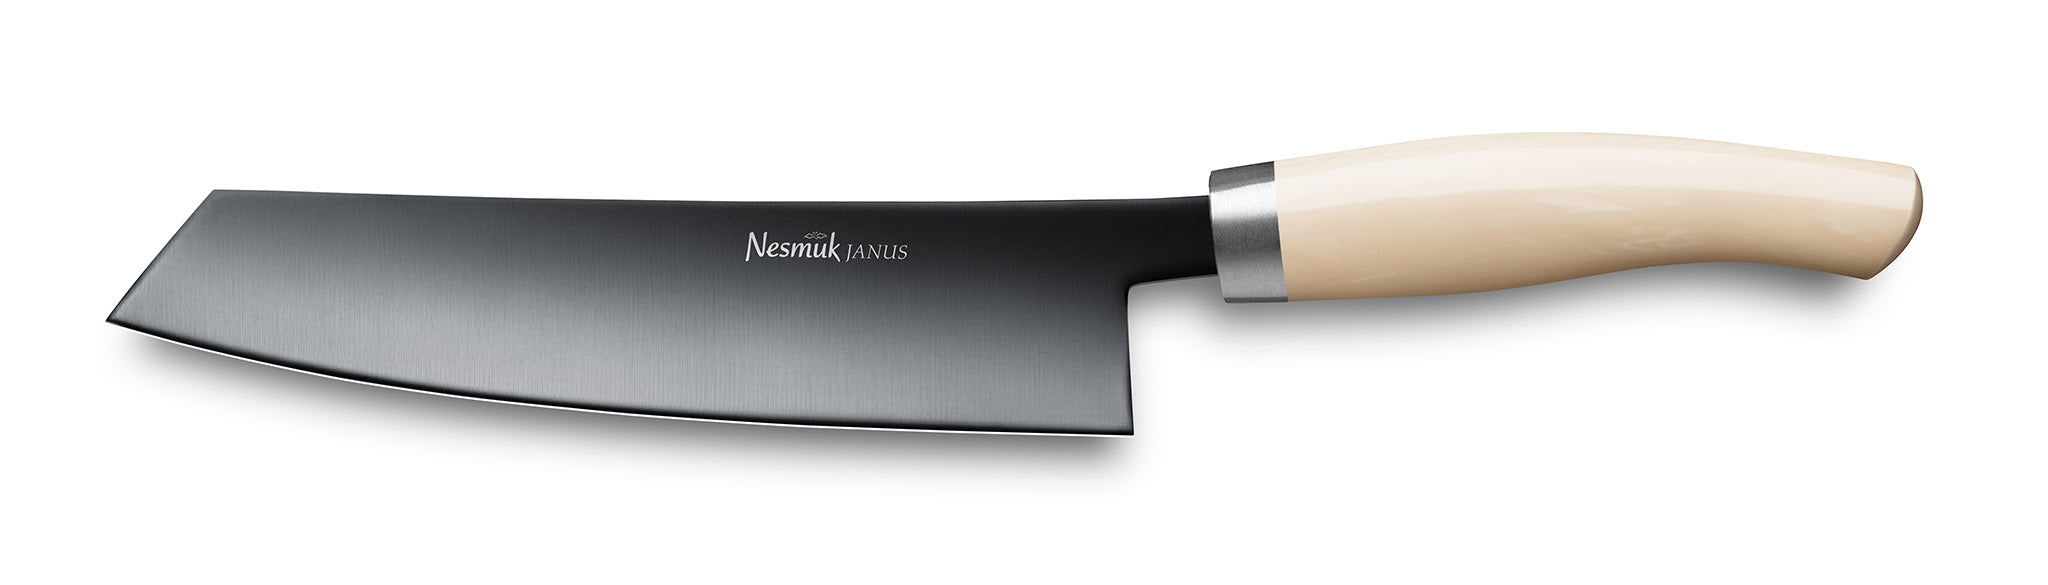 Kochmesser Janus von Nesmuk mit schwarzer Klinge und Griff aus Hightech Kunststoff Juma Ivory